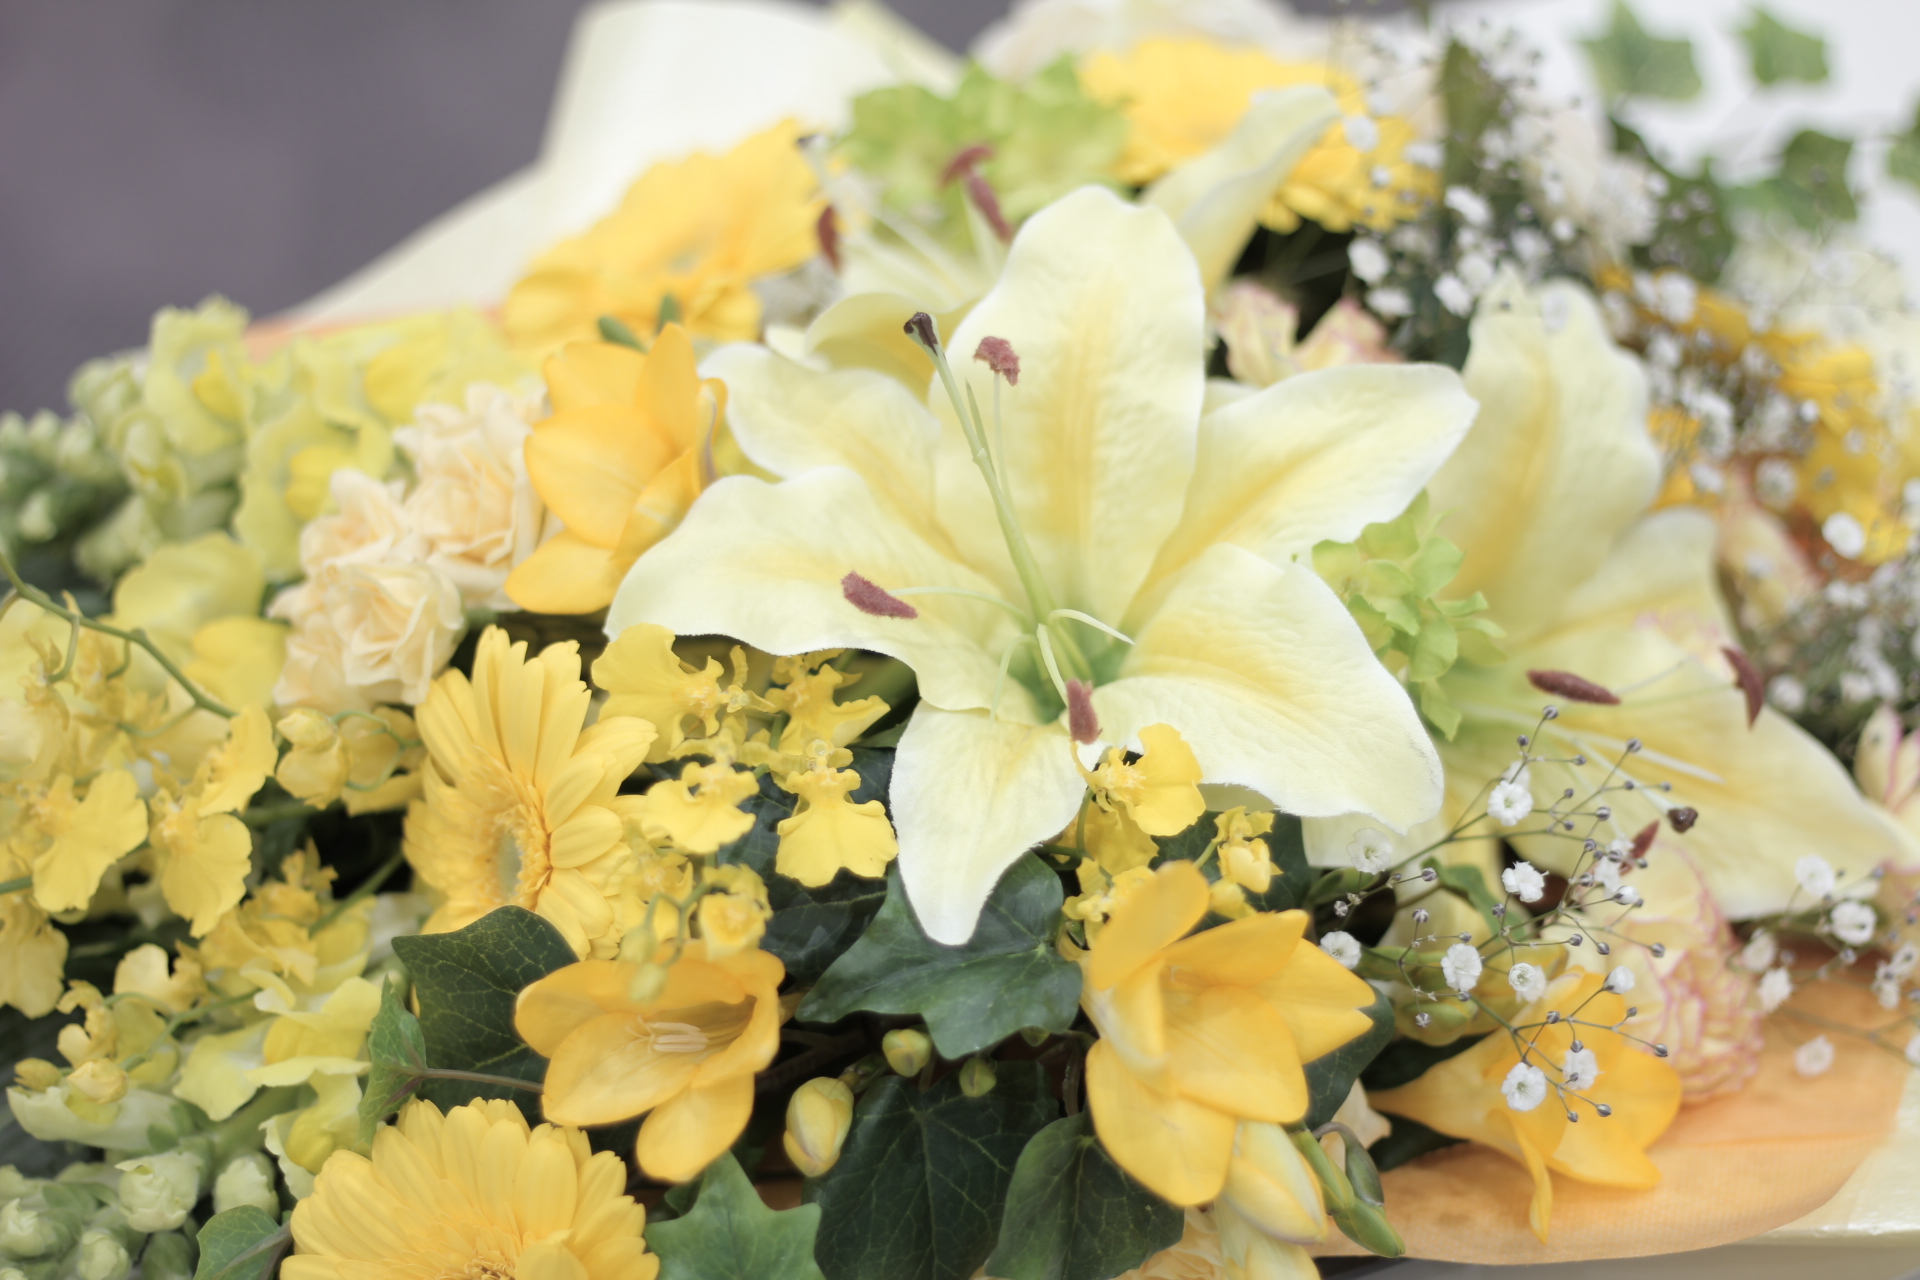 黄色のお別れの花 おてごろ葬 福岡 大阪の直葬や火葬式などの格安葬儀